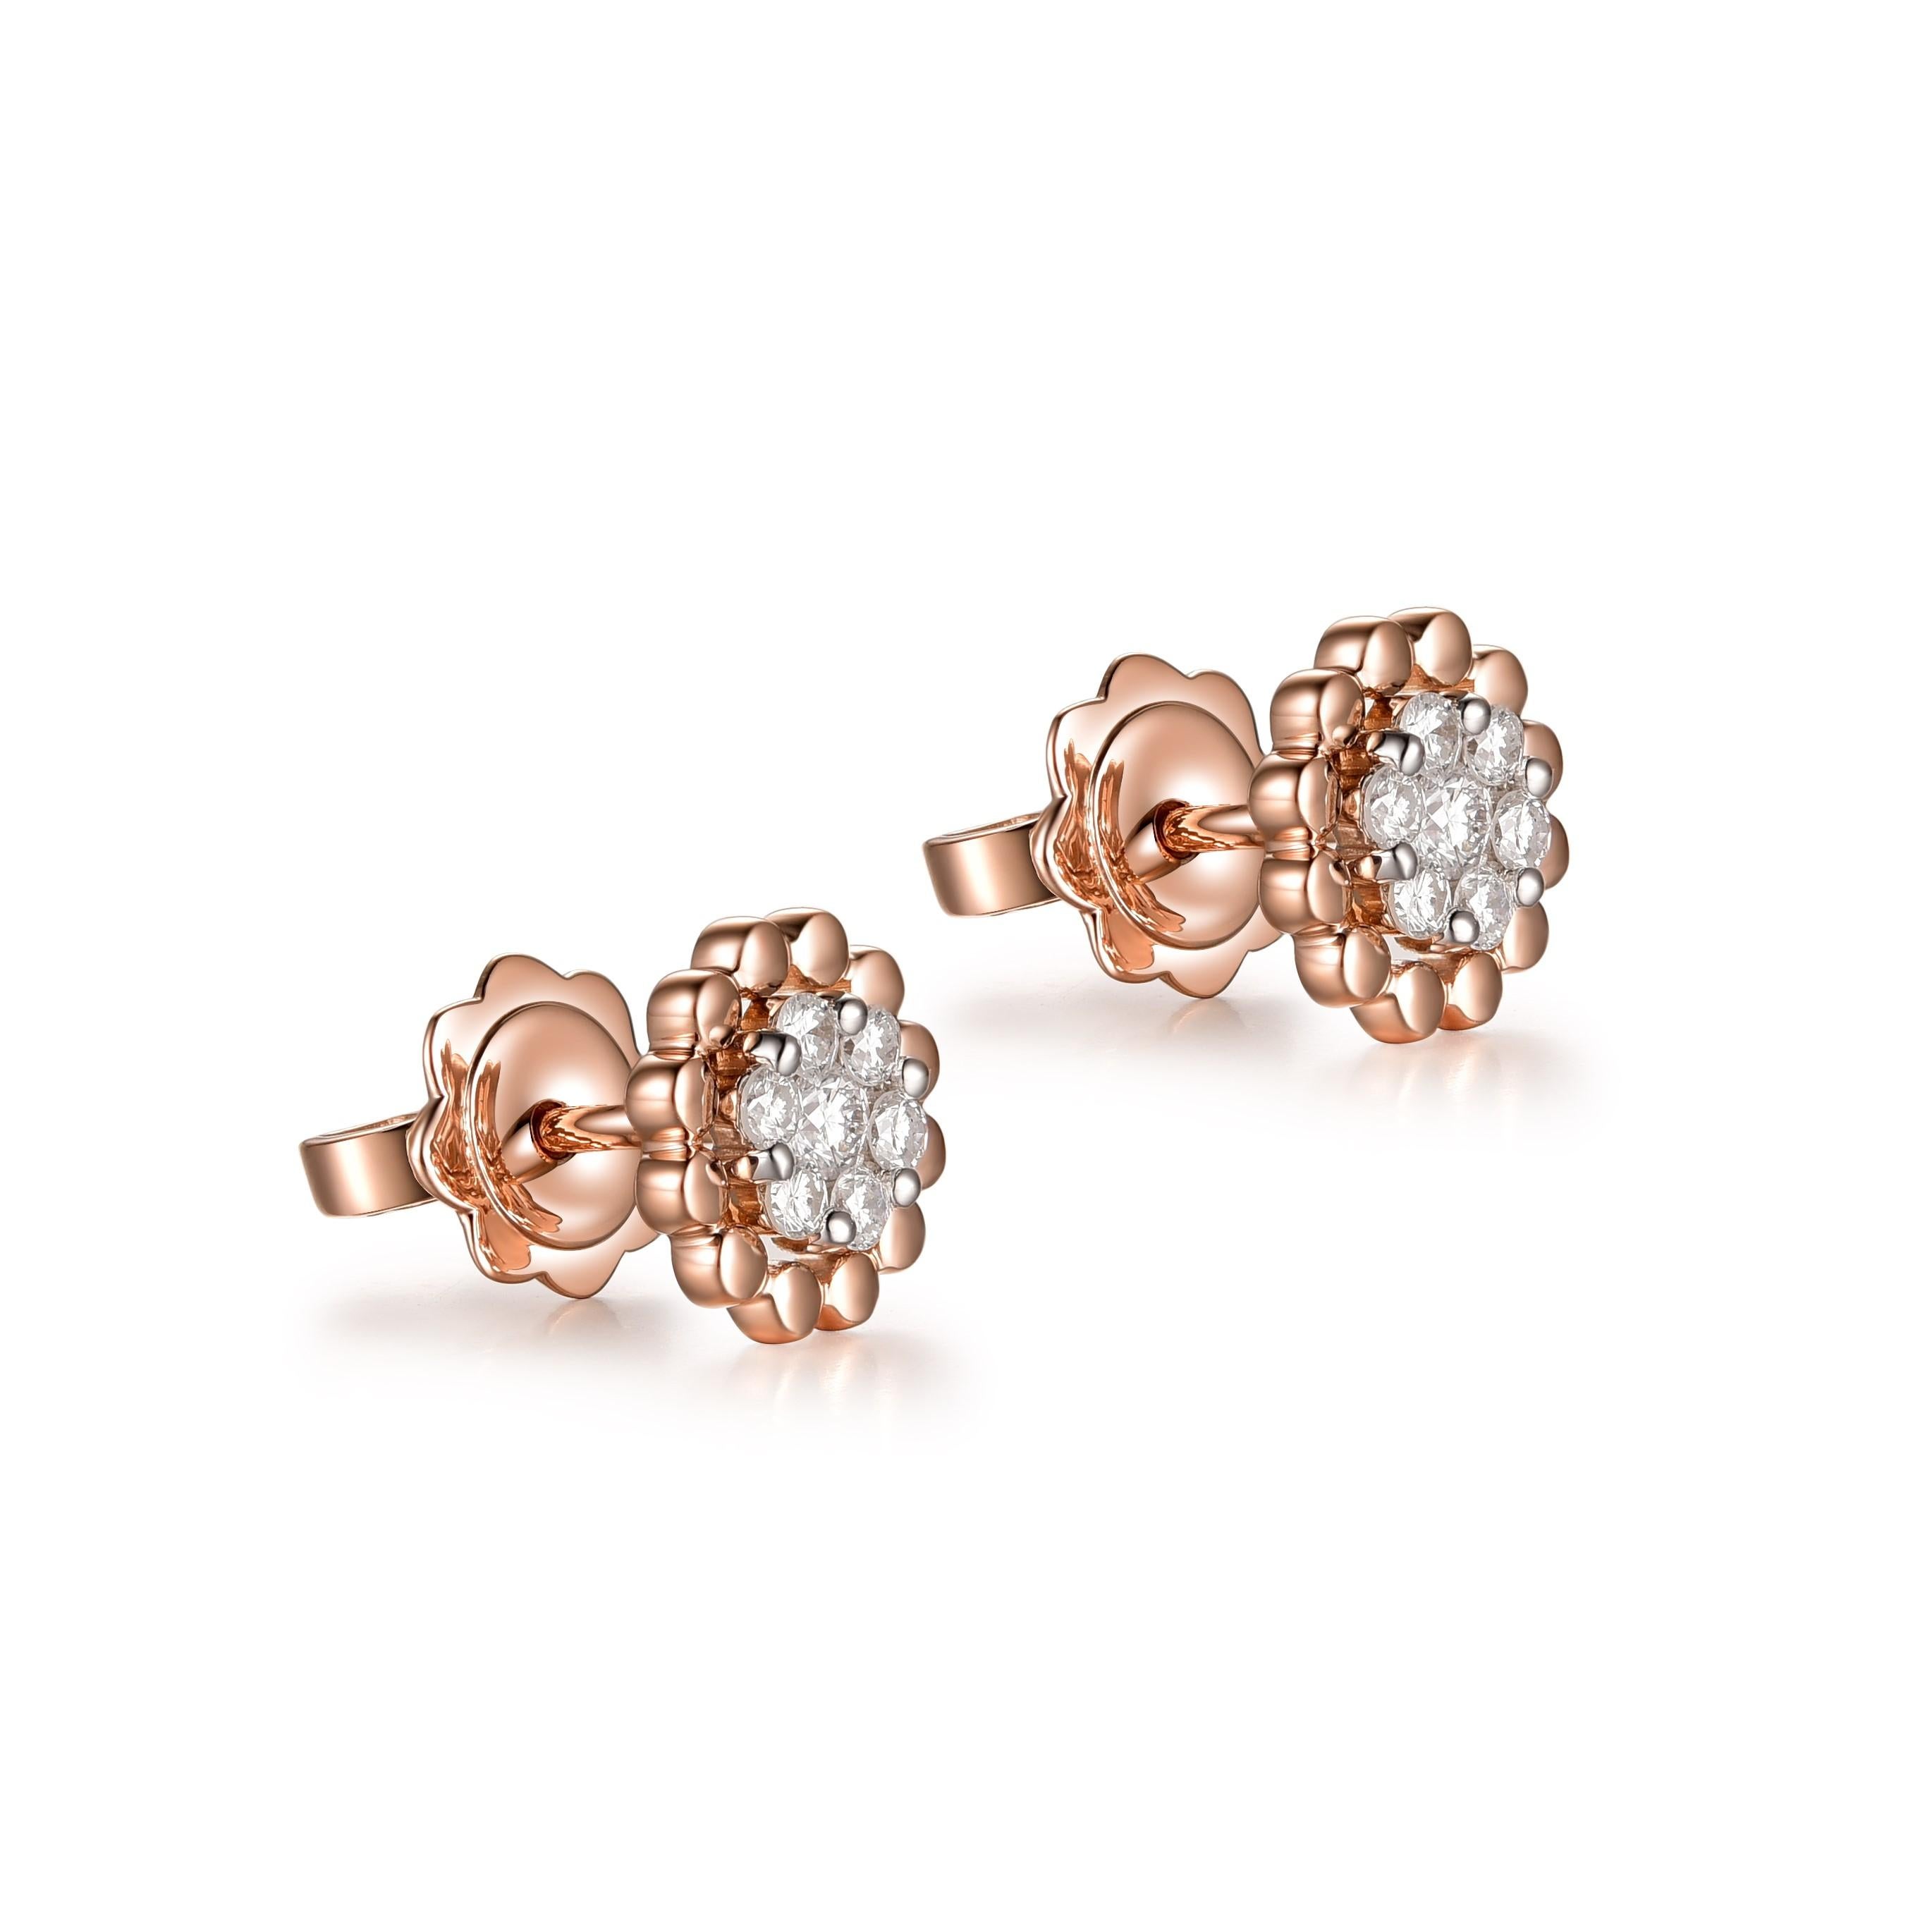 
Die abgebildeten Ohrringe sind ein bezauberndes Paar Diamantohrstecker aus 18 Karat Roségold, die moderne Eleganz und klassischen Charme ausstrahlen. Jeder Ohrring ist mit einem Cluster aus runden Brillanten besetzt, die sorgfältig zu einem